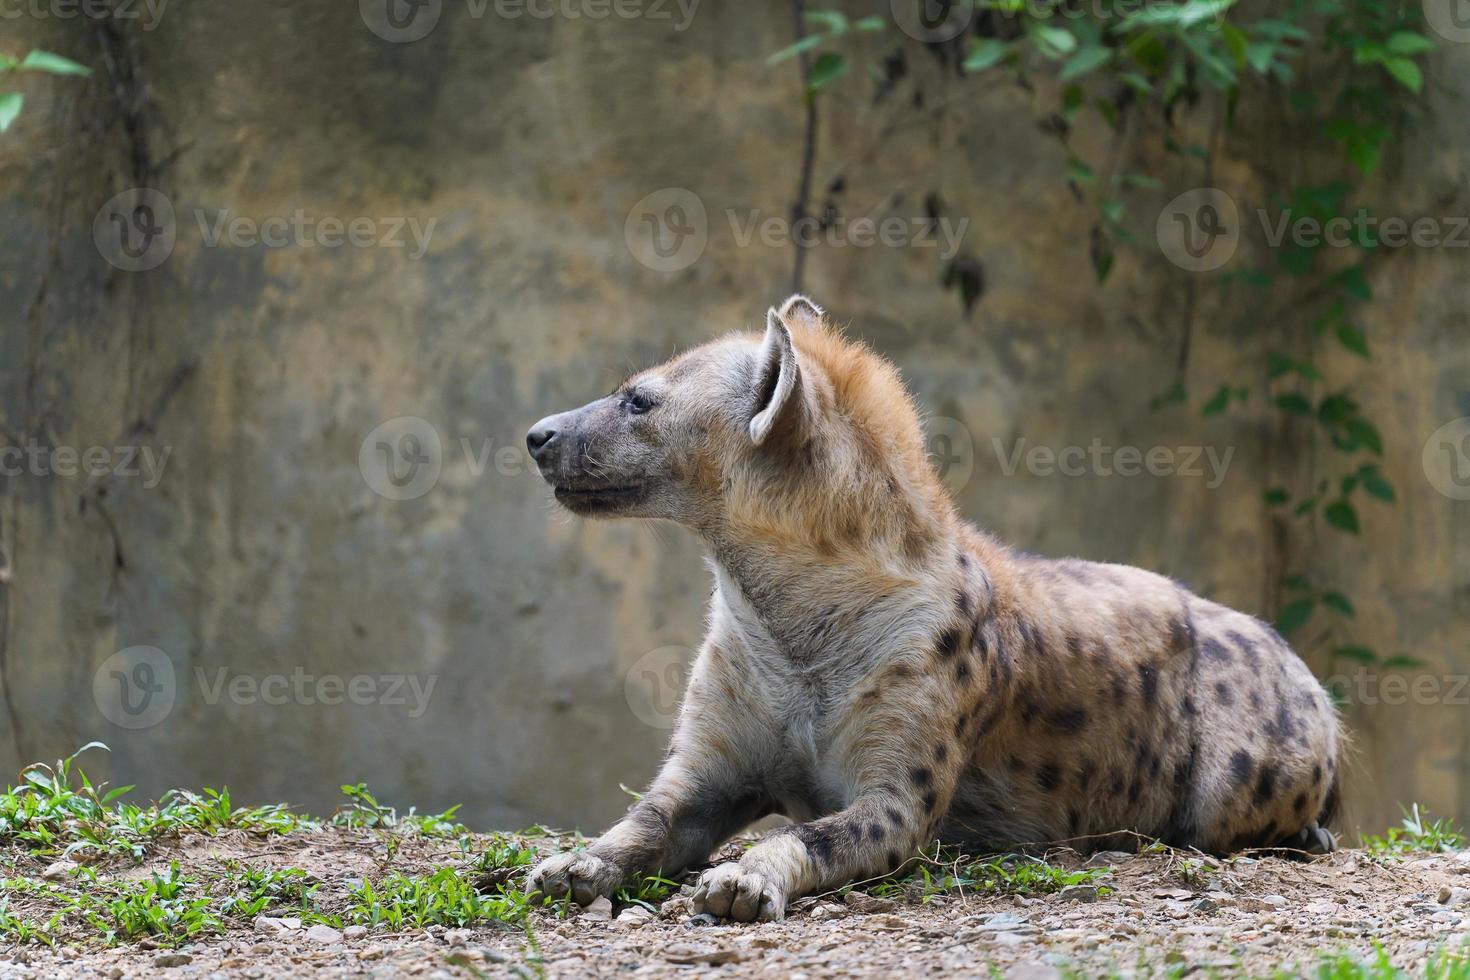 hiena manchada no zoológico foto